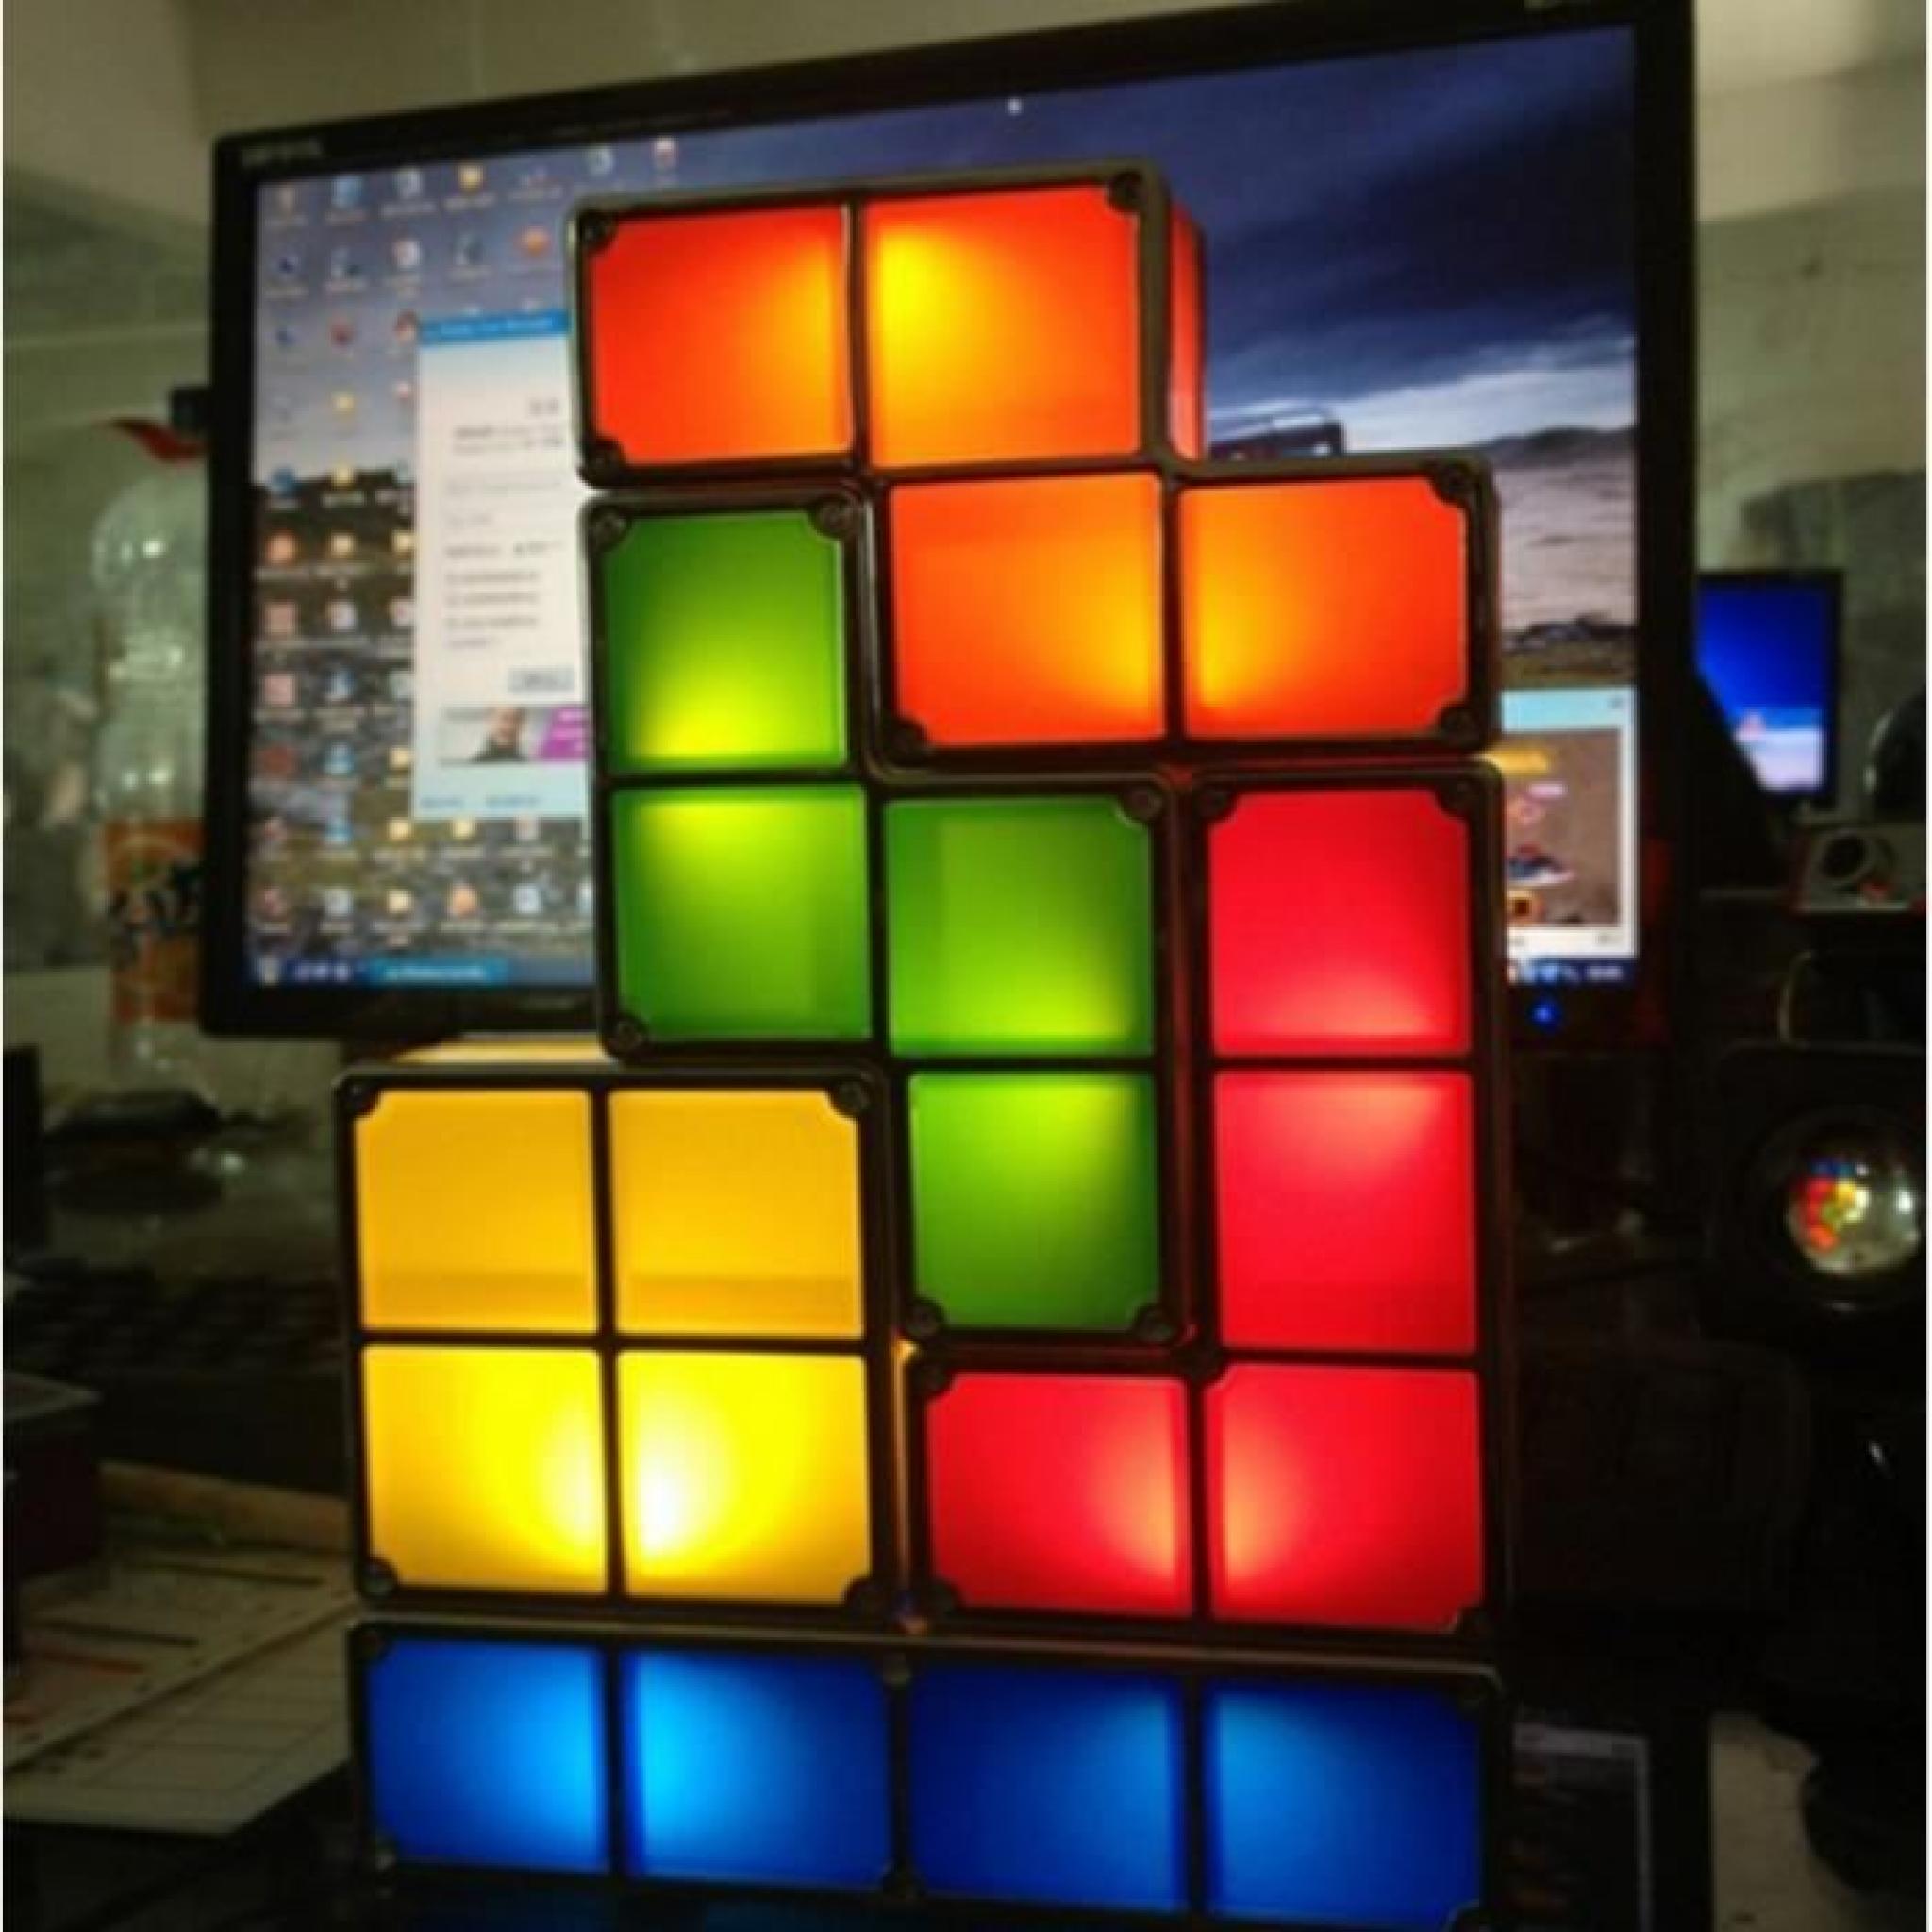 Lampe tetris design, cadeau design pas cher